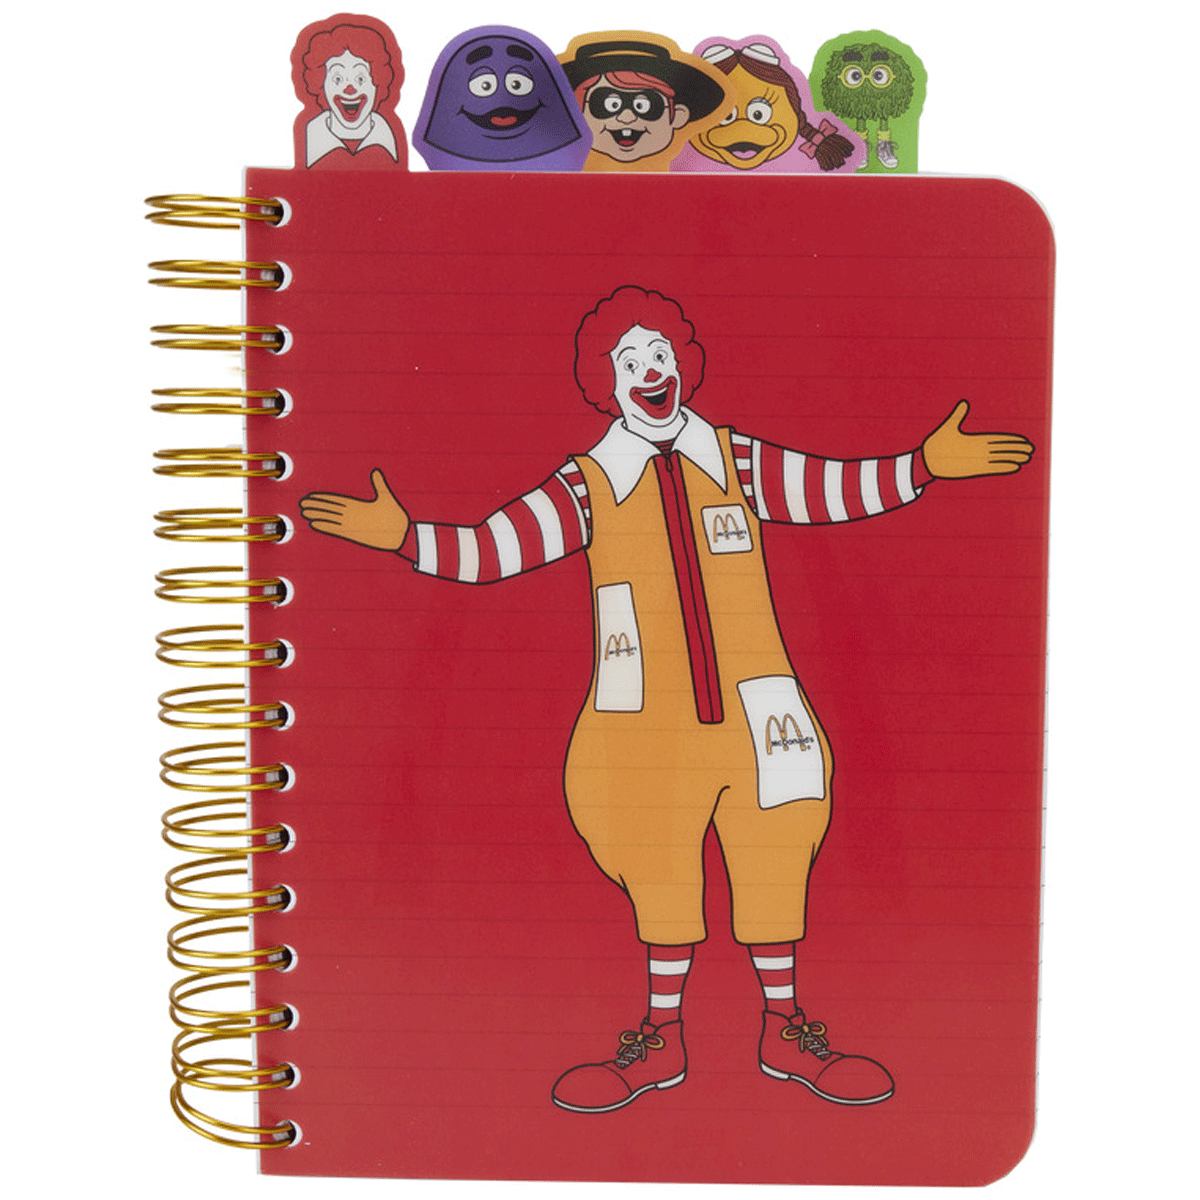 Loungefly x McDonalds Gang Tab Spiral Notebook Journal - GeekCore